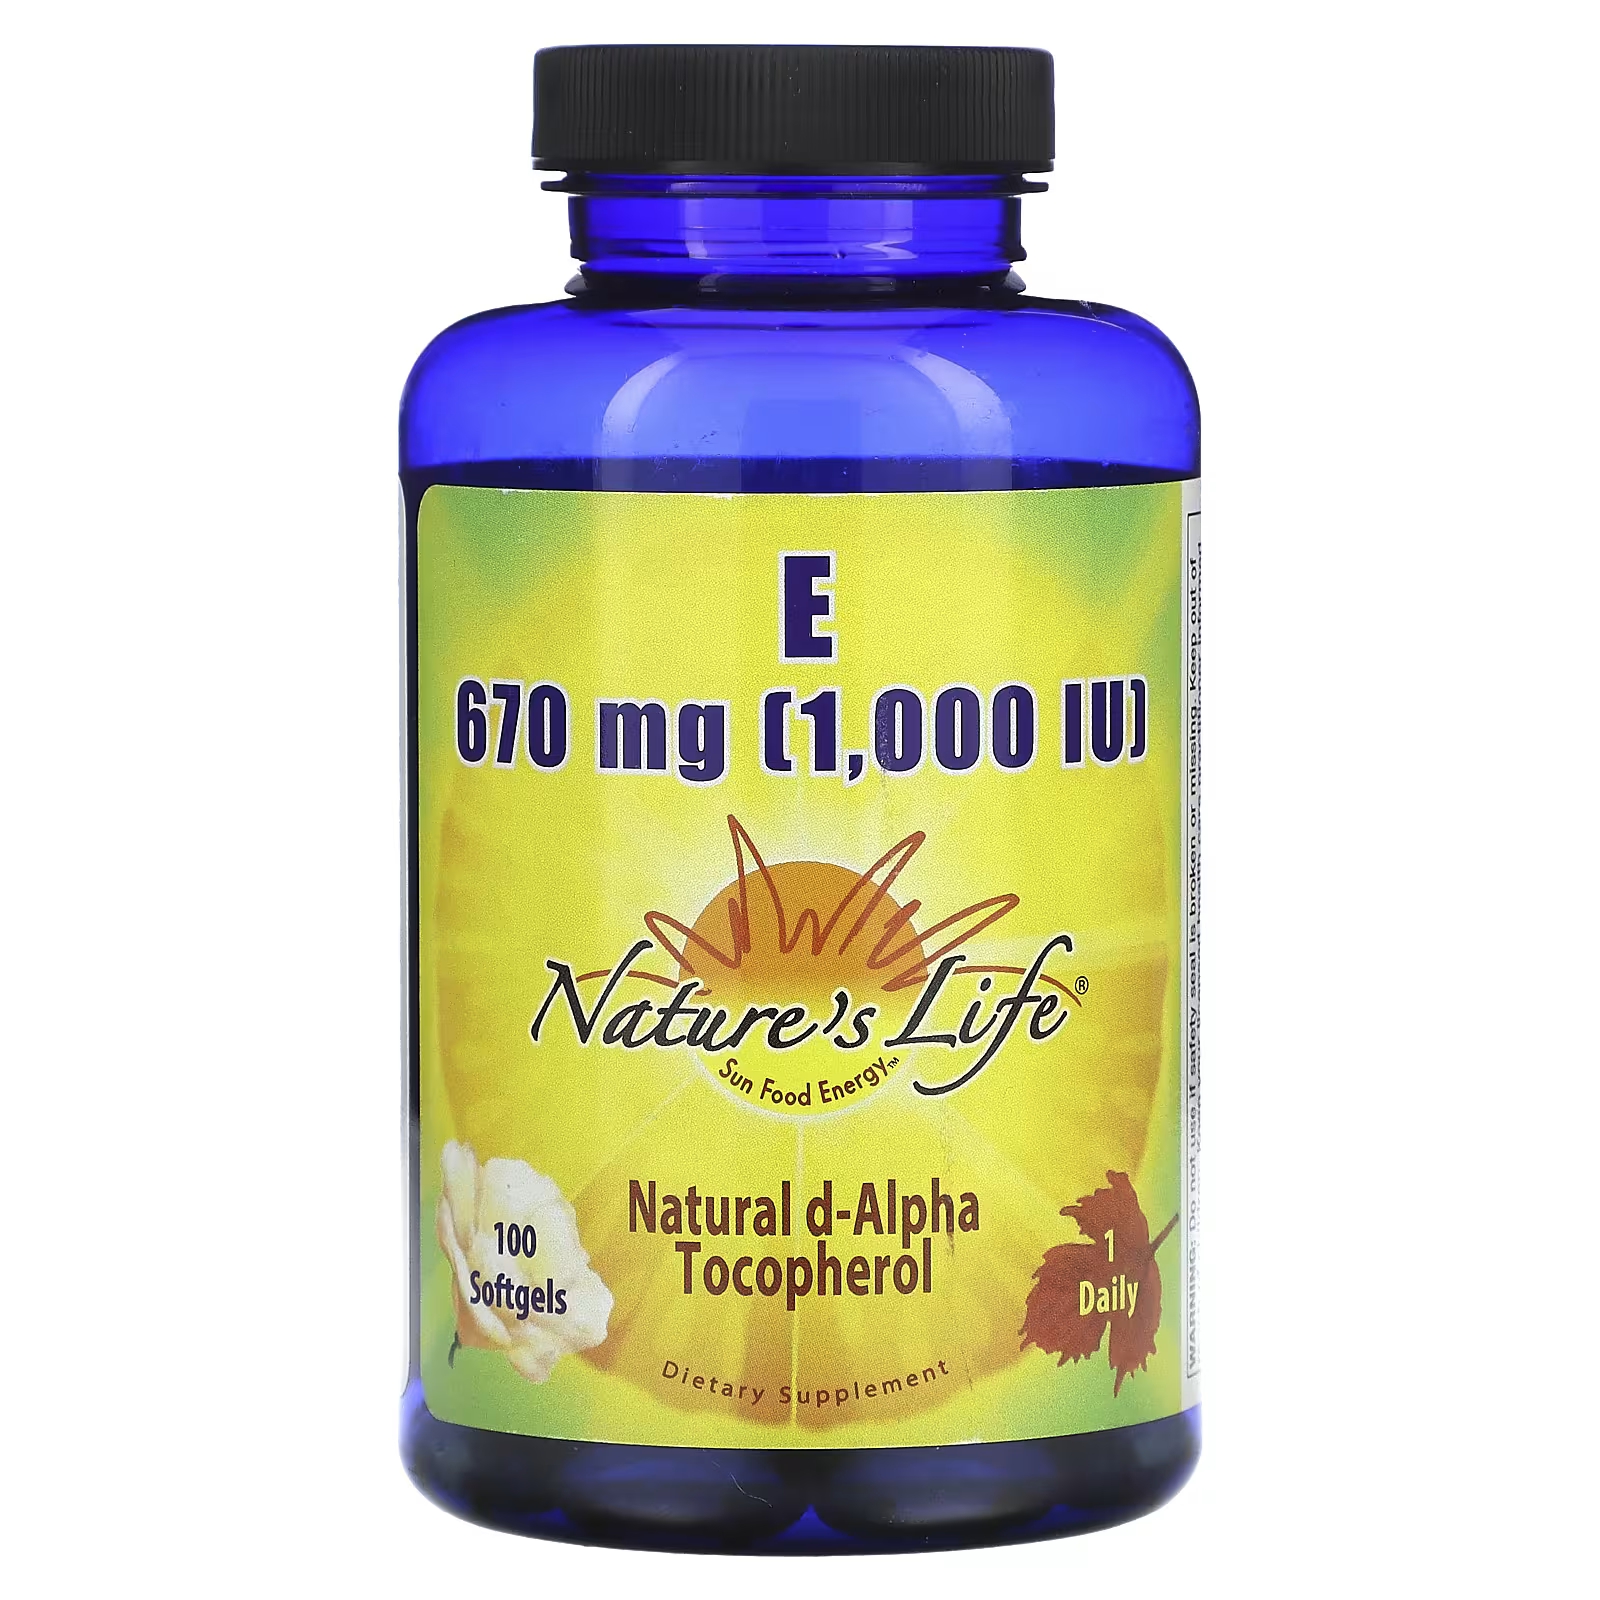 Nature's Life Витамин Е 670 мг (1000 МЕ), 100 мягких таблеток solgar витамин е природного происхождения 670 мг 1000 ме 100 мягких желатиновых капсул